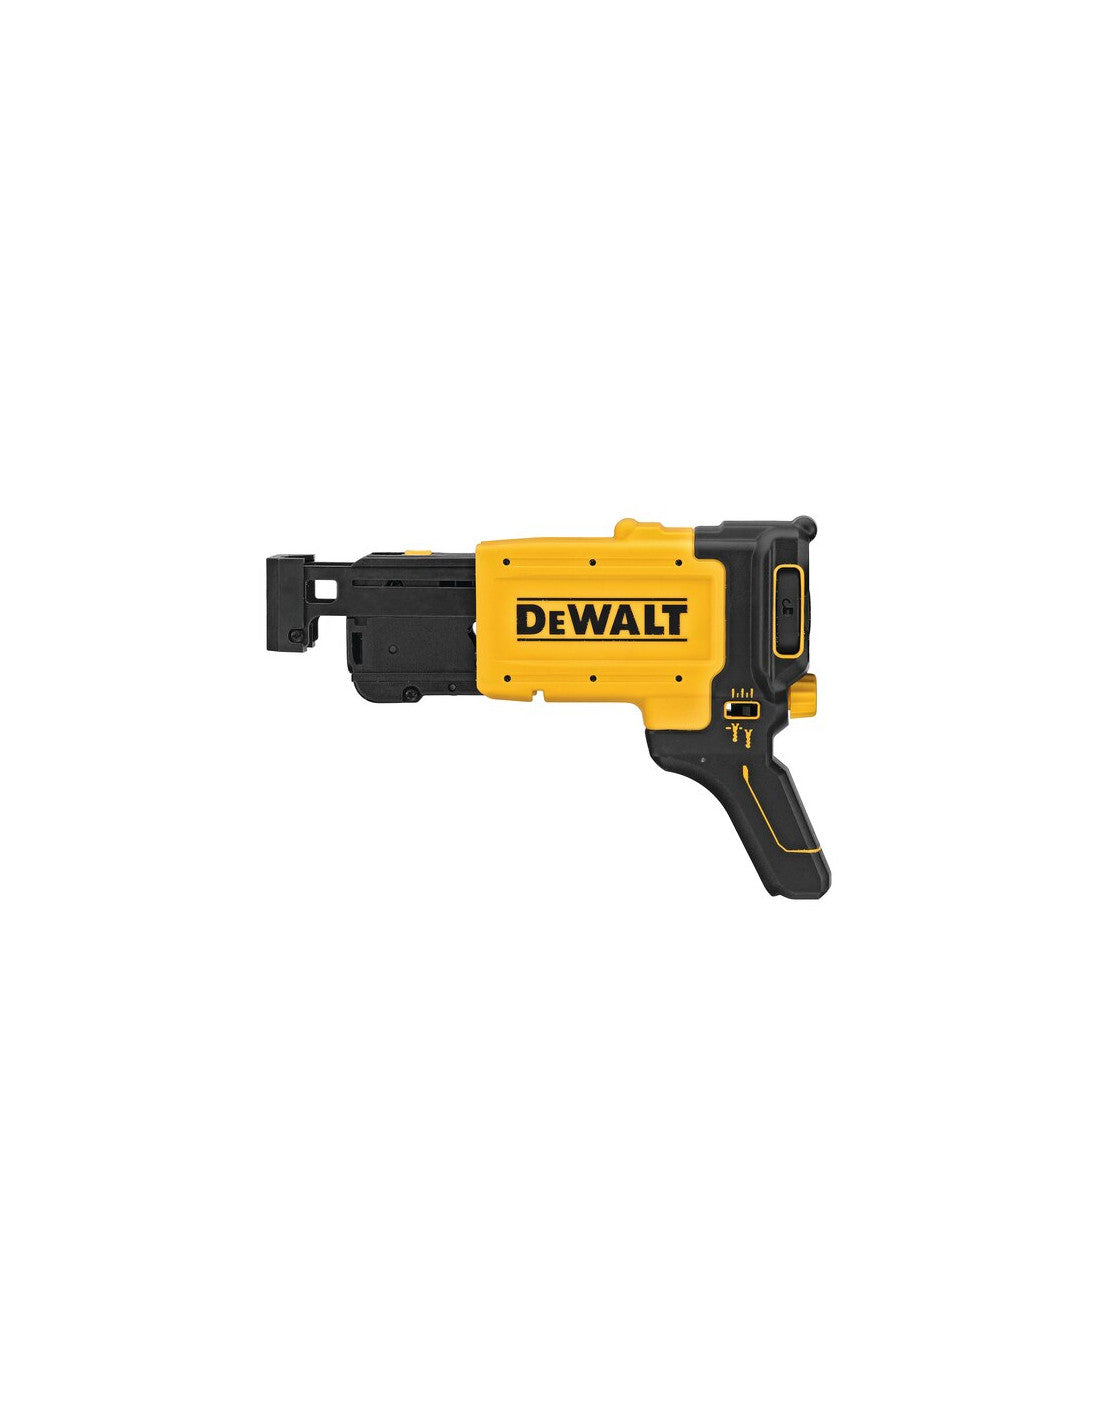 Dewalt 18v plasterboard screwdriver 2 2.0 Ah batteries with carrying case + DCF620D2K rapid screw charger